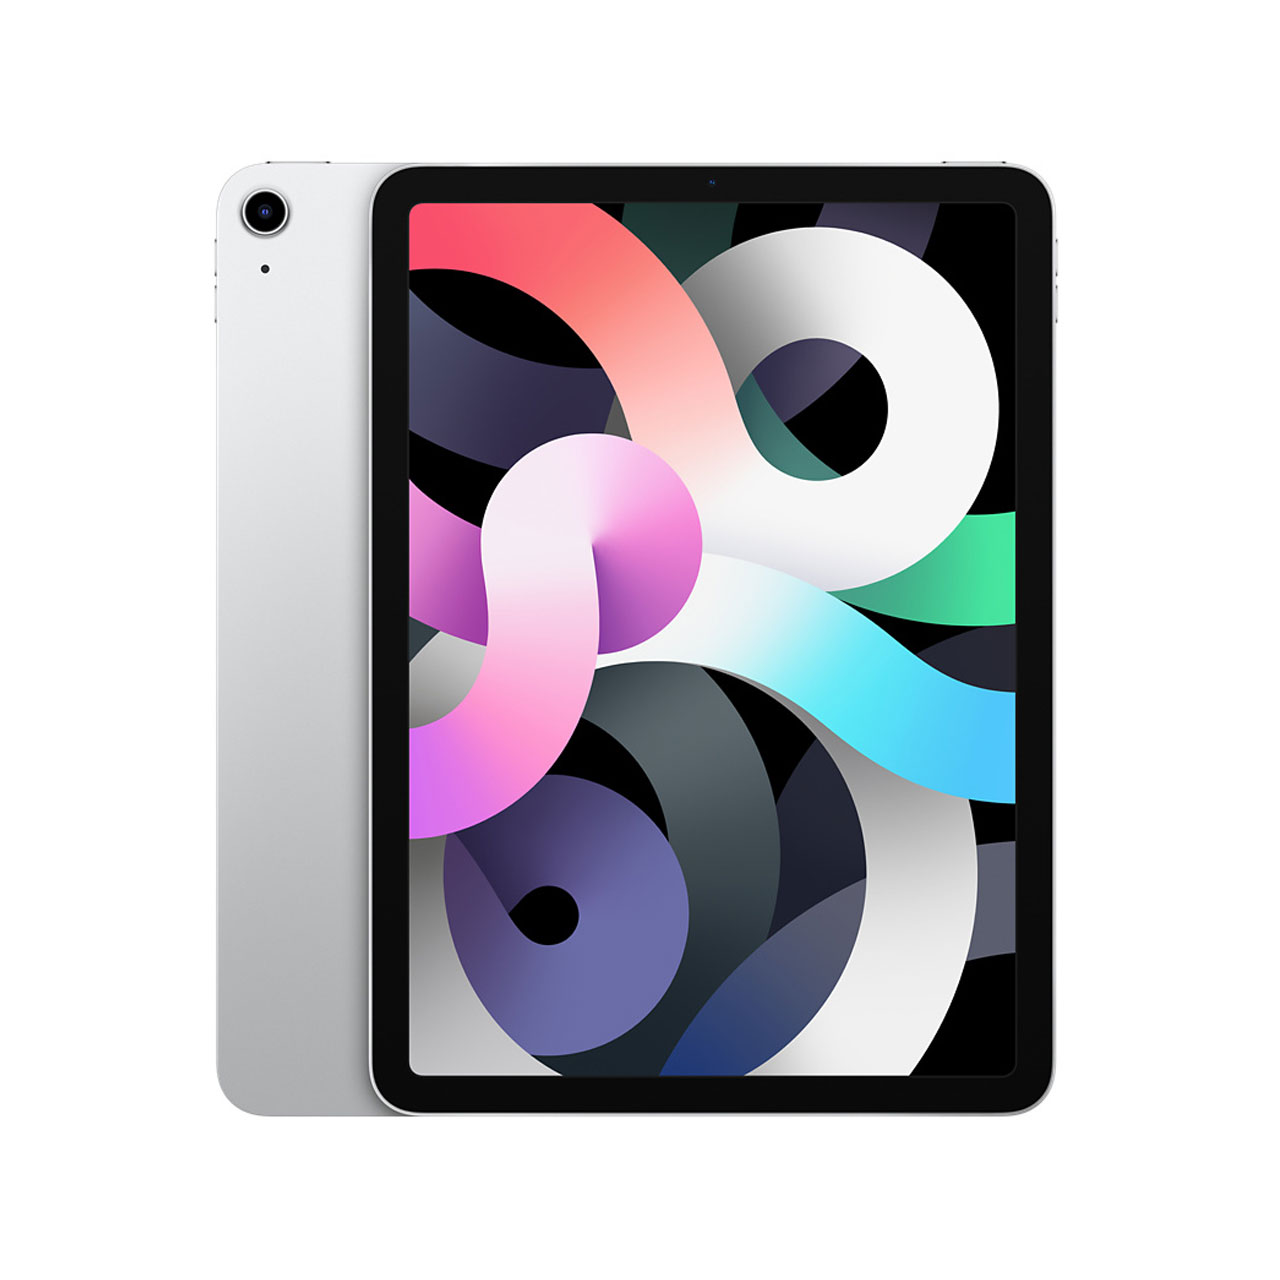 تبلت اپل مدل iPad Air 2020 (4th Gen) LTE با حافظه داخلی 64 گیگابایت